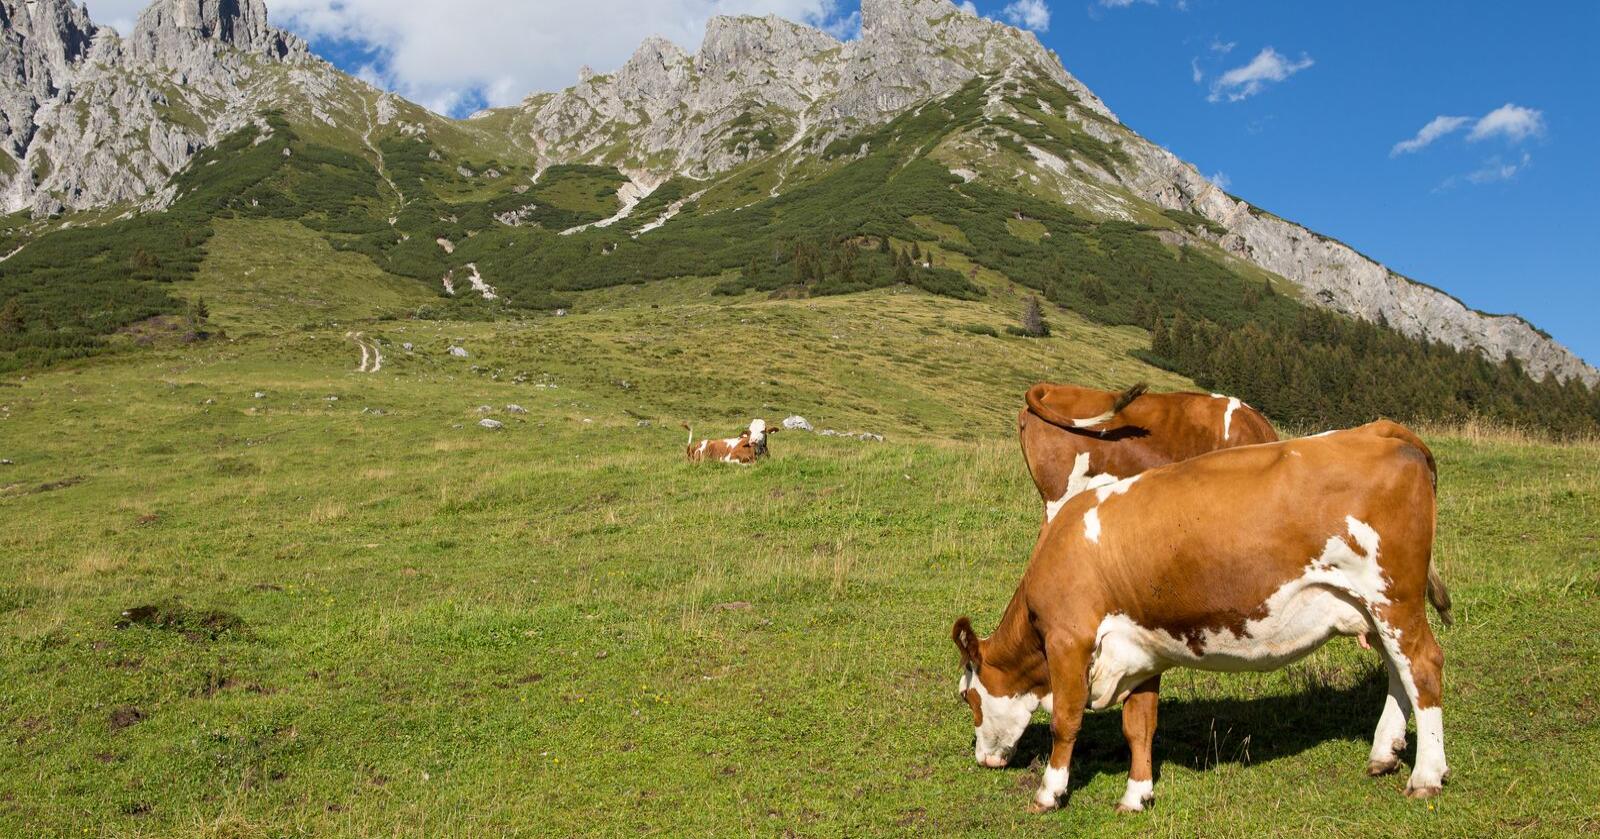 Fjellbøndene i Østerrike har lykkes med å øke produksjonen av melk de siste årene, og eksport til flere land. Foto: Lubos Chlubny/Mostphotos